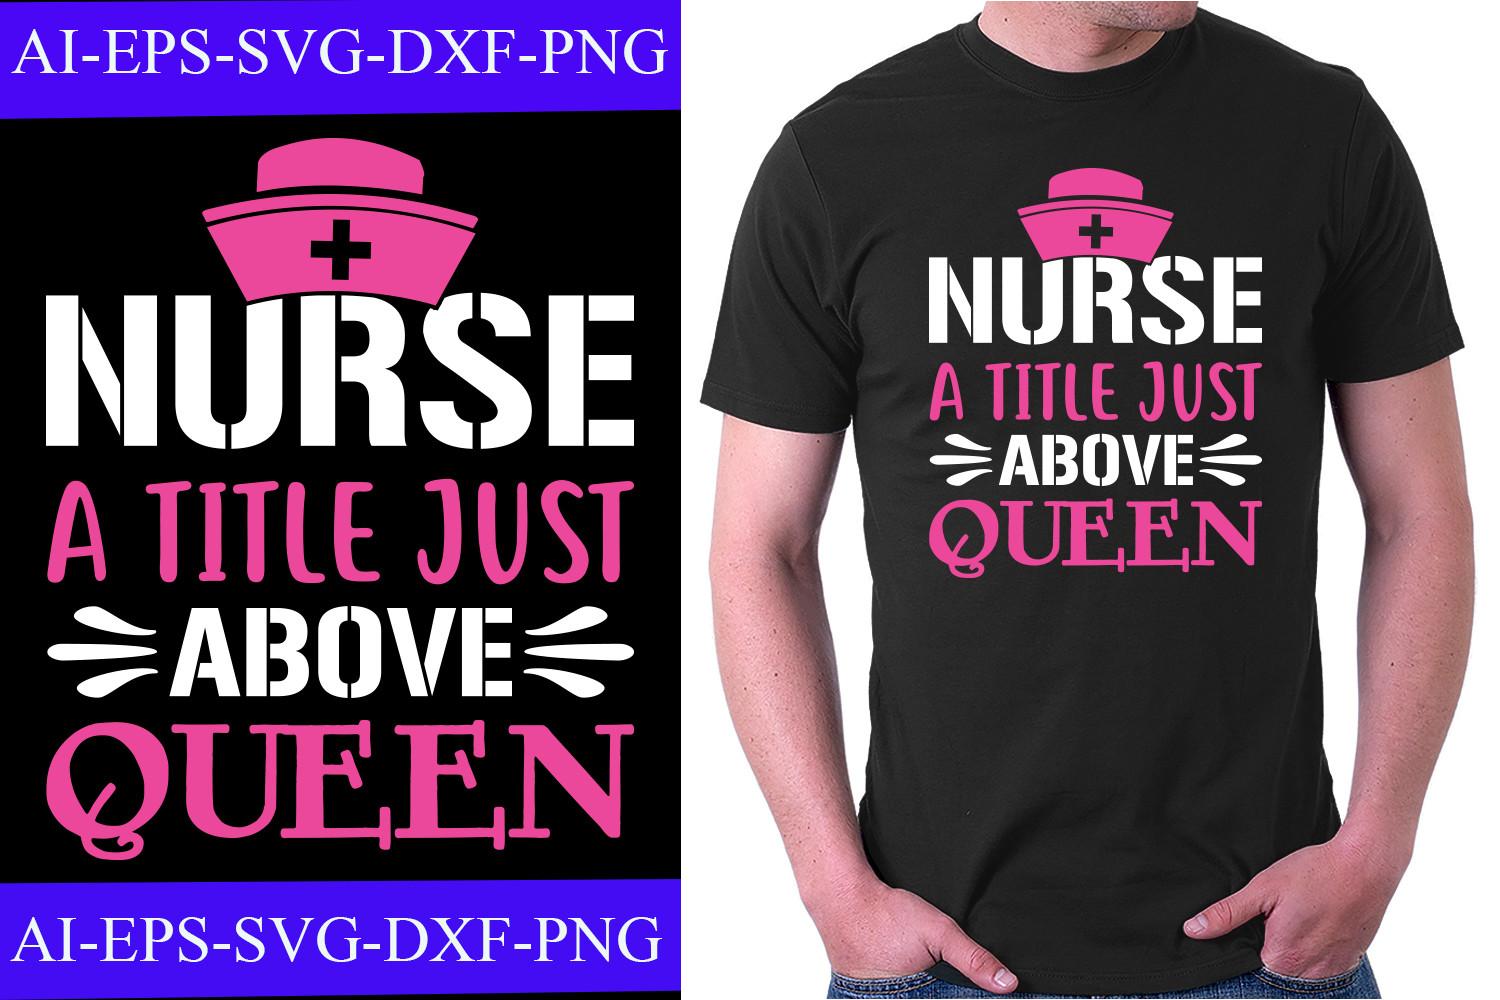 Nurse a Title Just Above Queen T-shirt